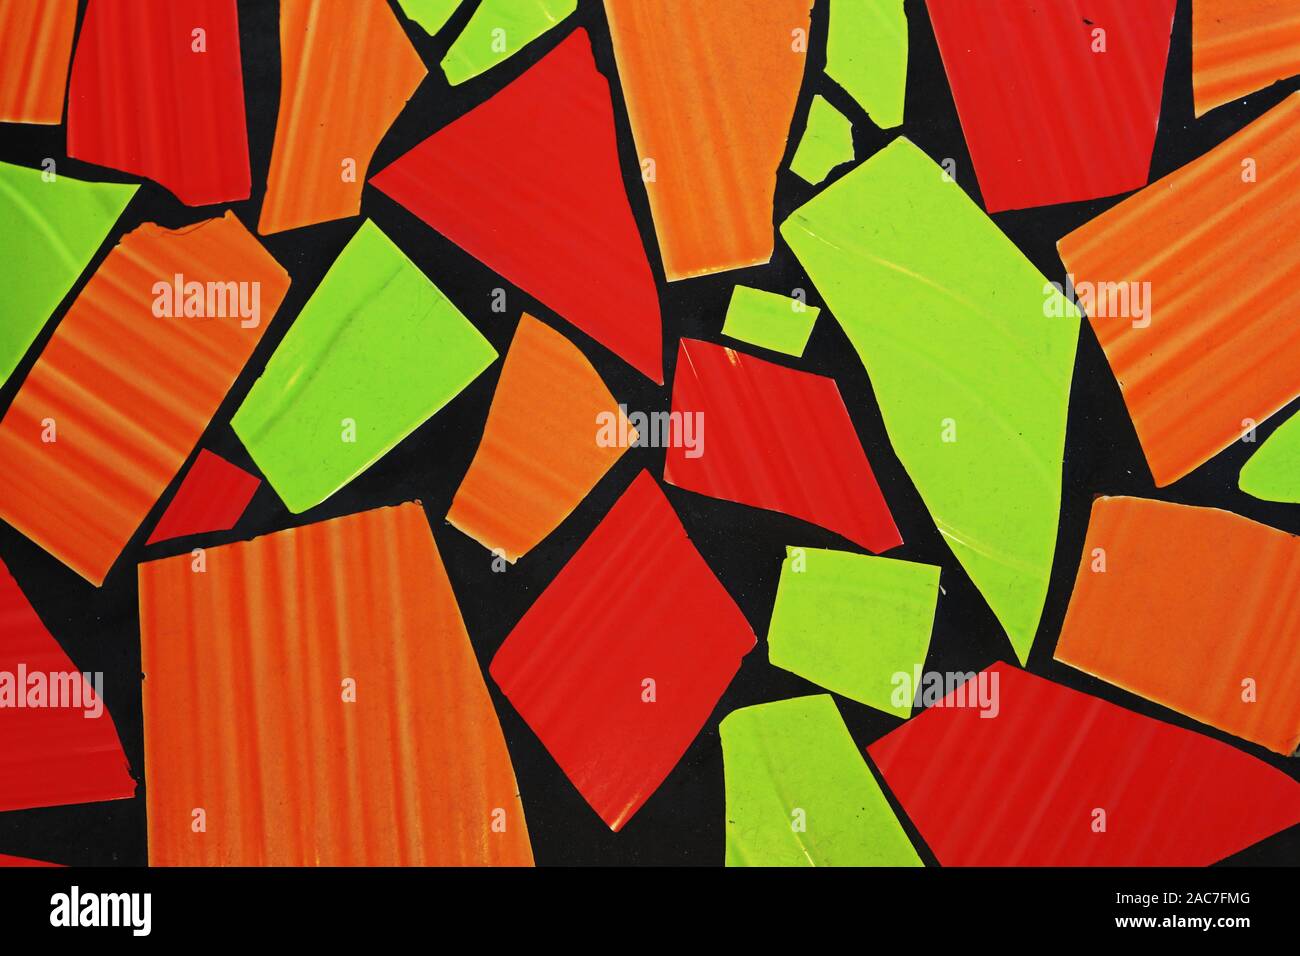 Mosaïque colorée de rouge vert et orange 600x600 avec contours noirs Banque D'Images